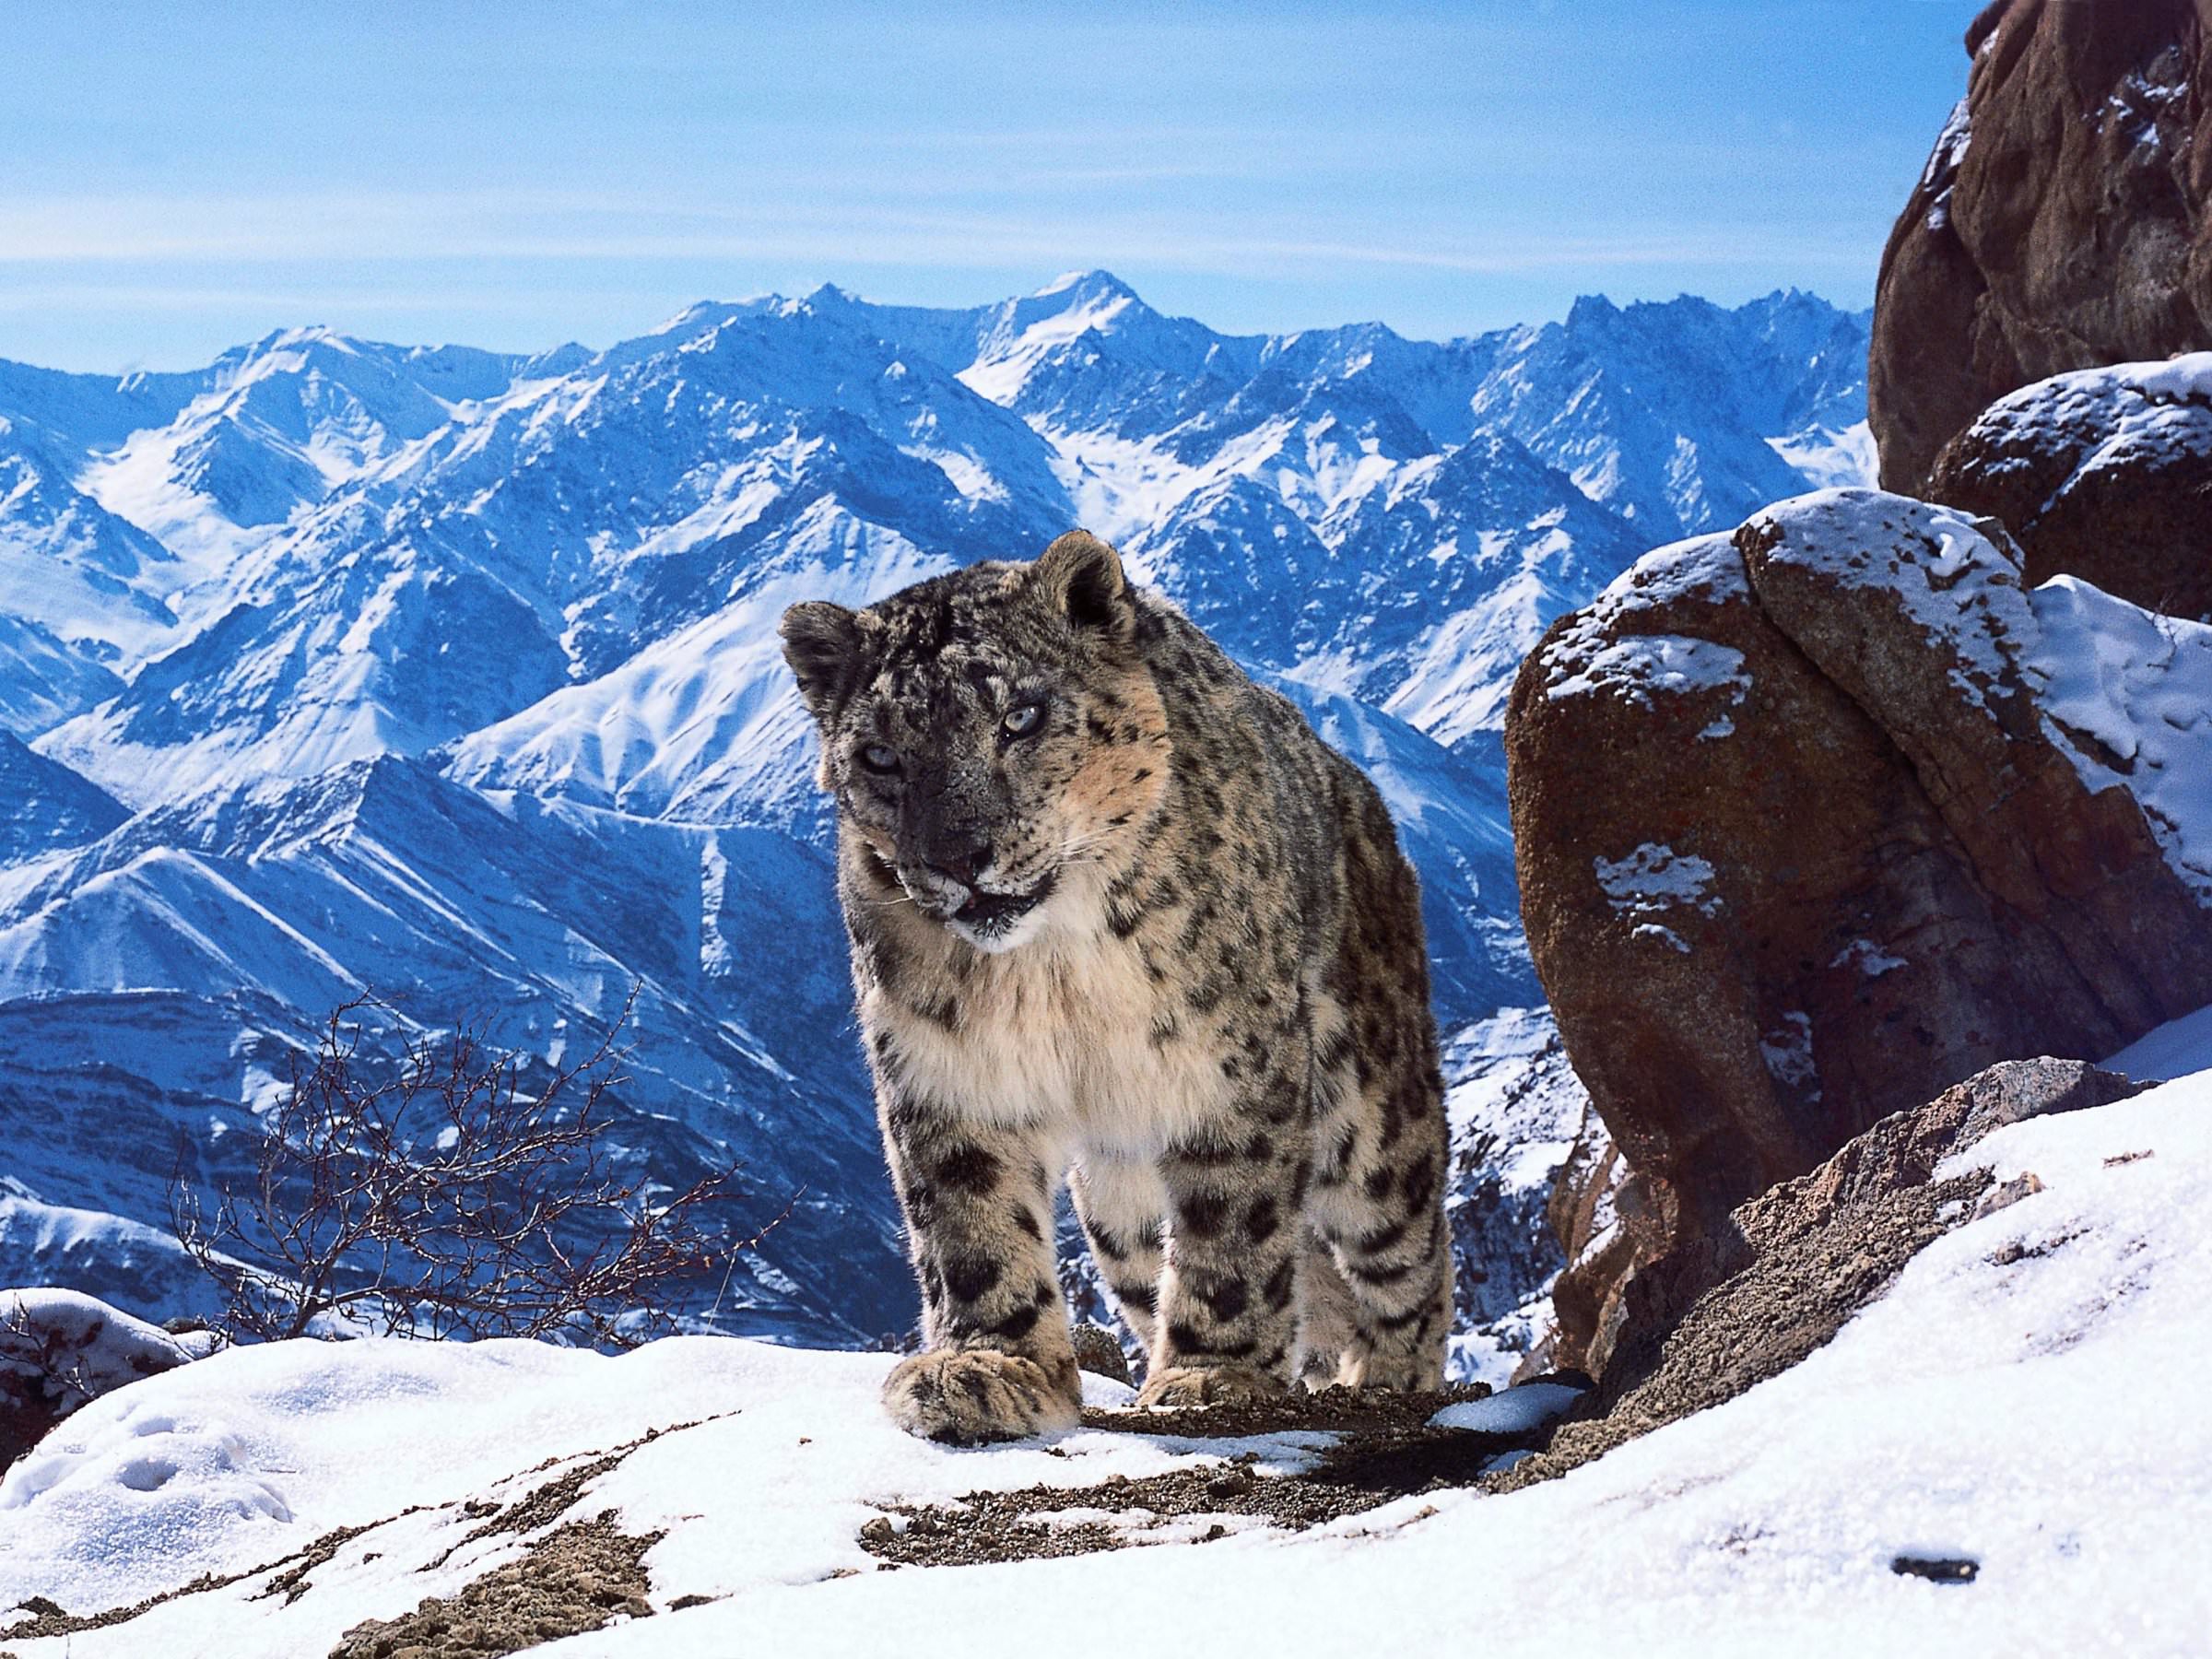 "Snow Leopard", Himalayas